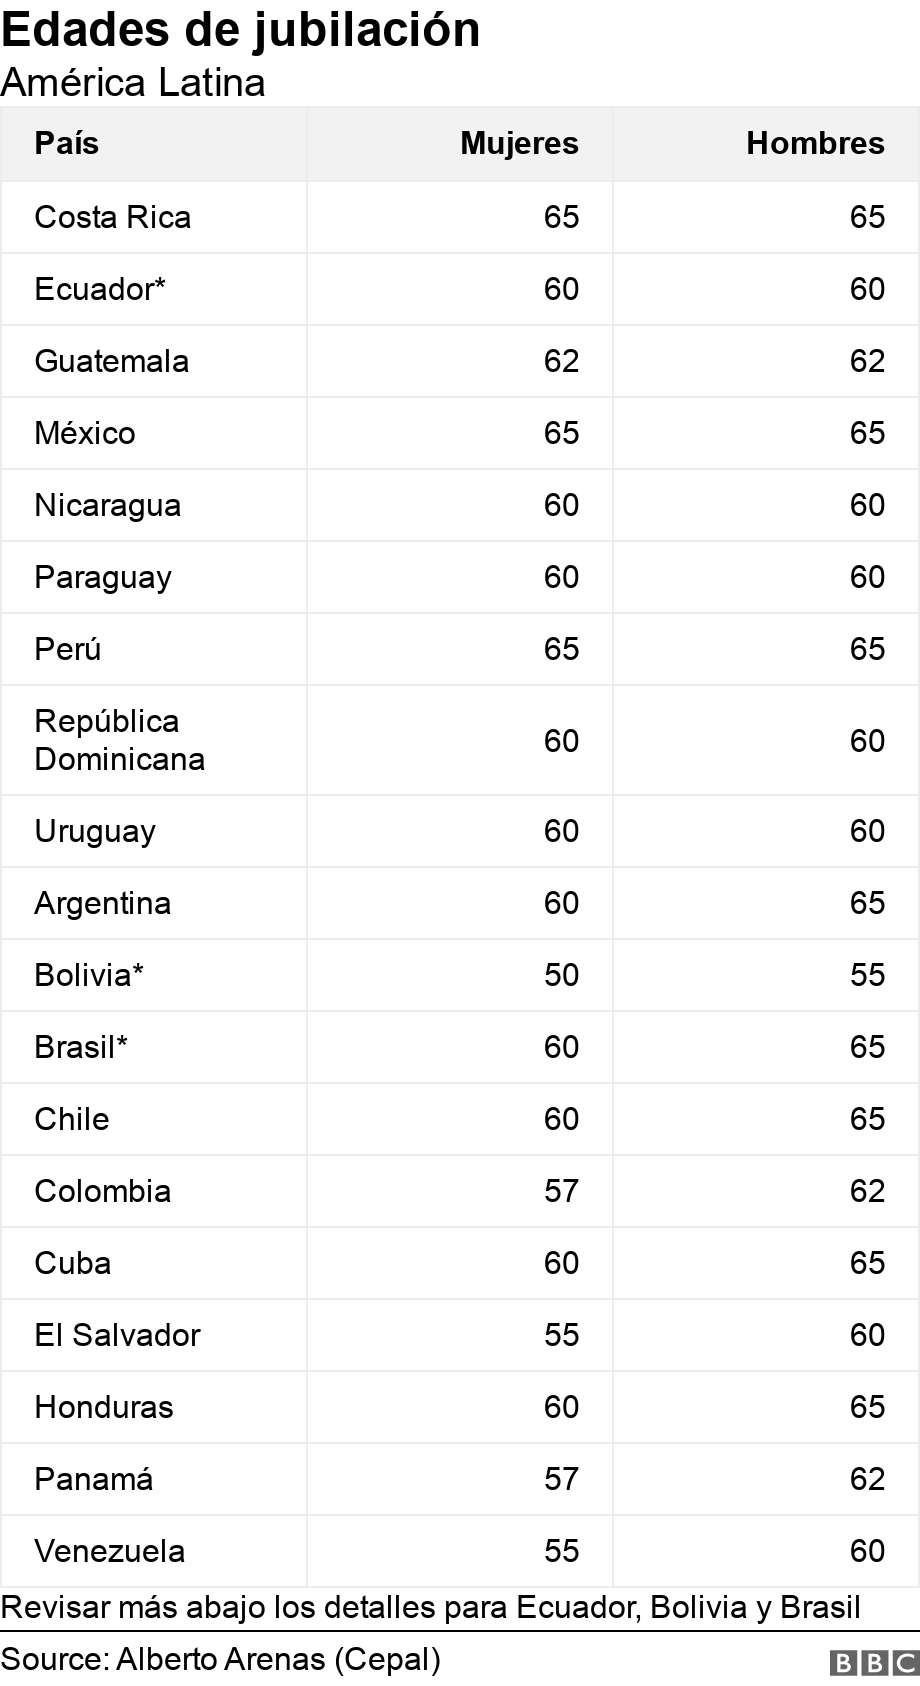 Edades de jubilación. América Latina. Revisar más abajo los detalles para Ecuador, Bolivia y Brasil.